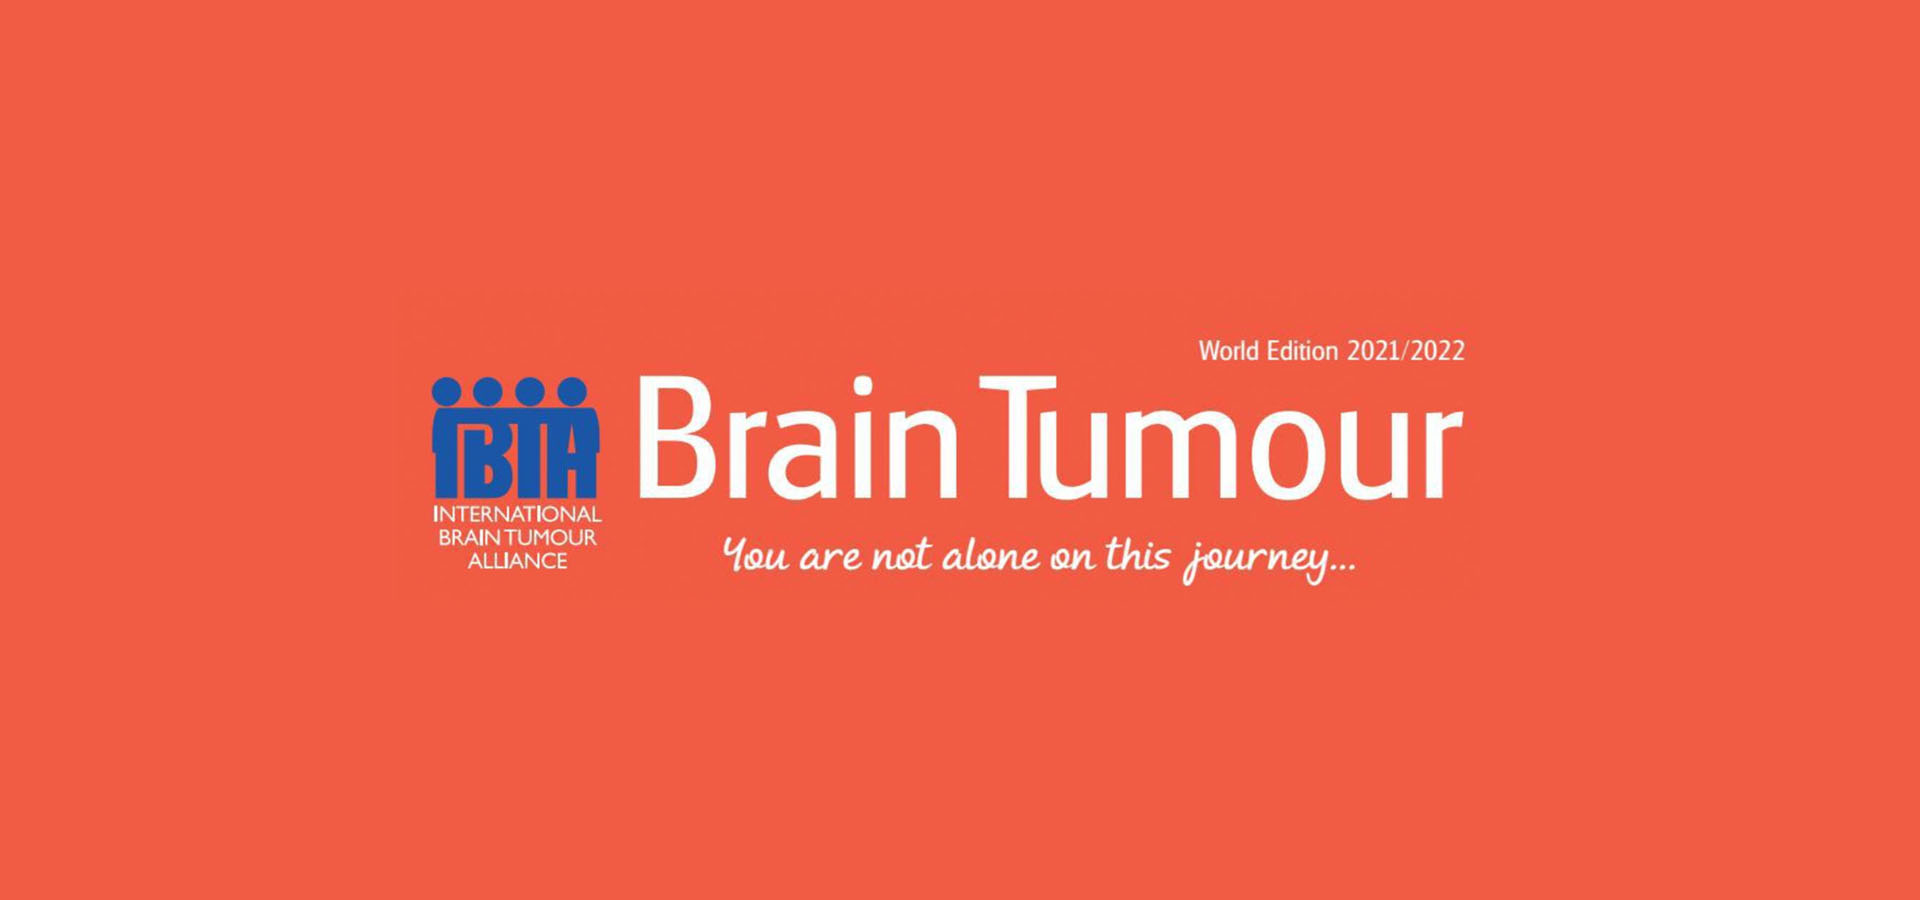 Pubblicato l’articolo “Why Brainy?” su Brain Tumour – World Edition 2021